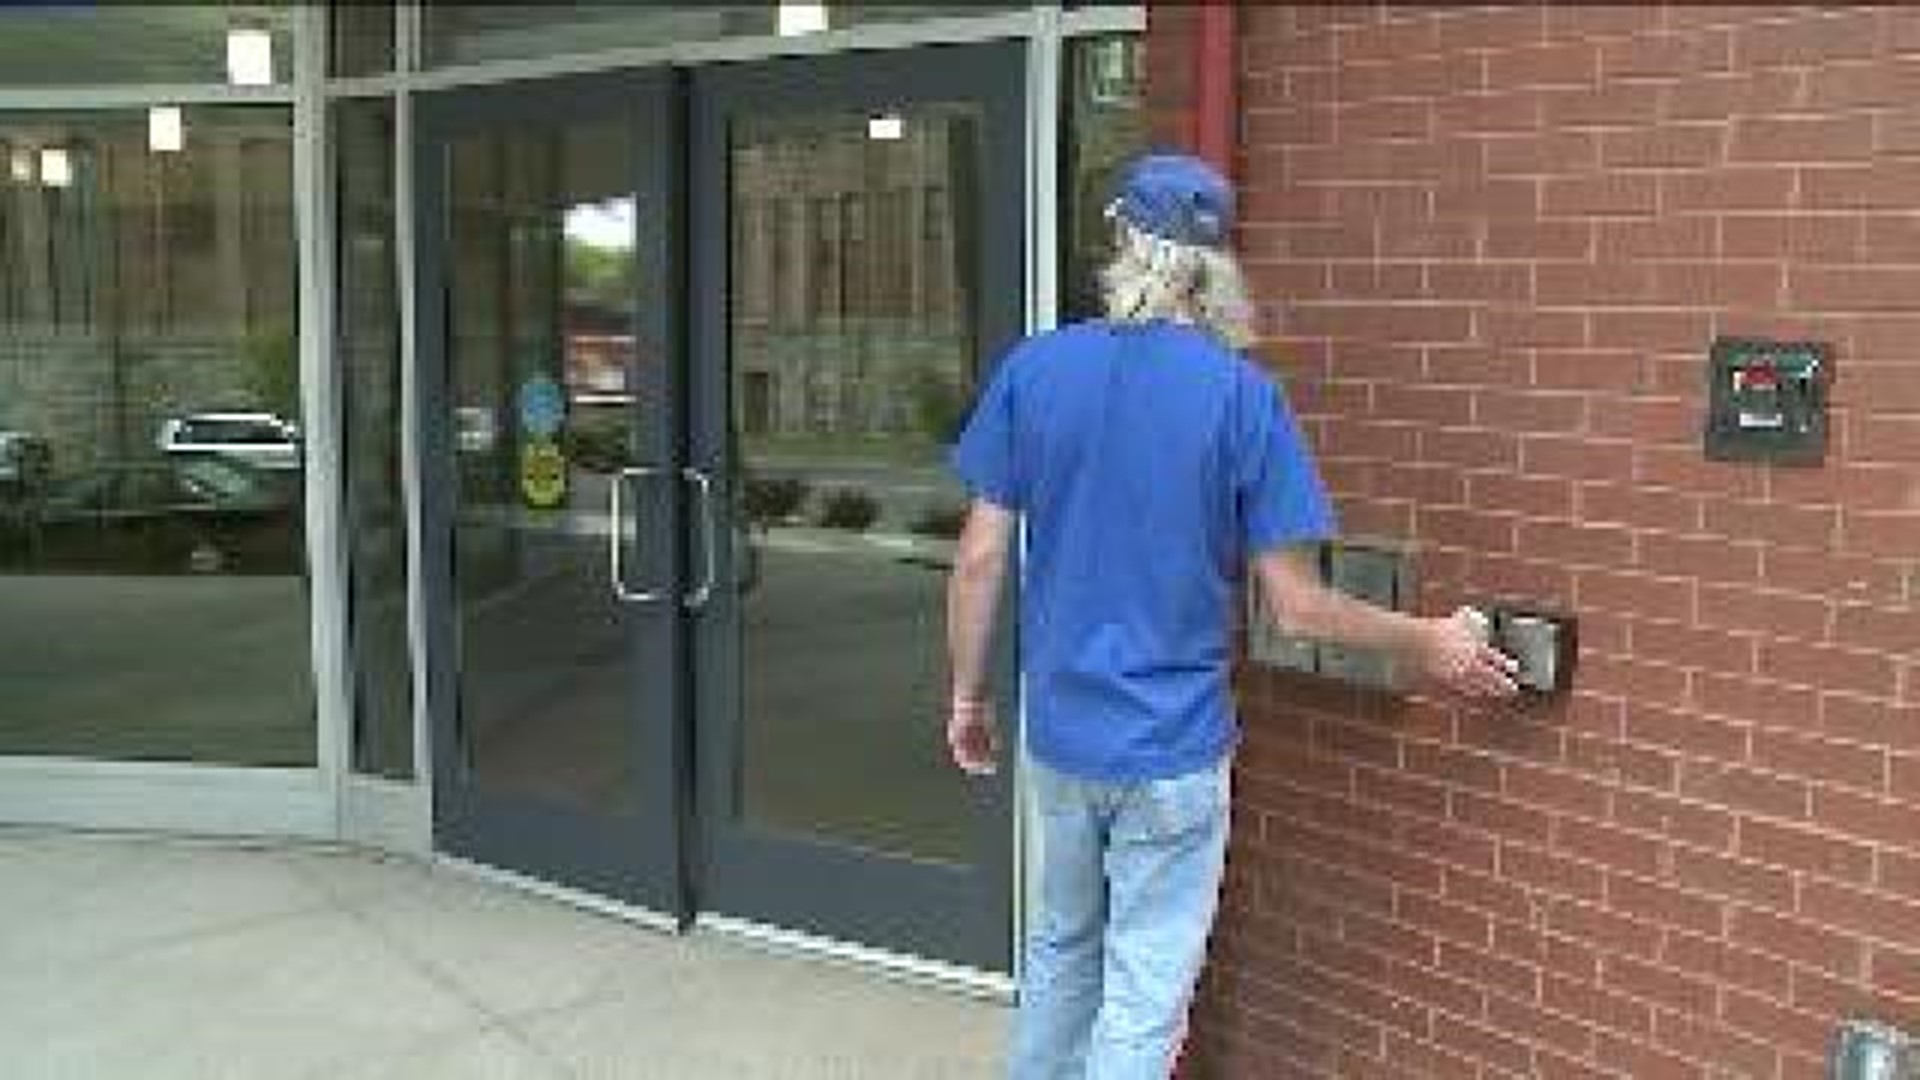 Housing For Homeless Veterans Opens in Scranton